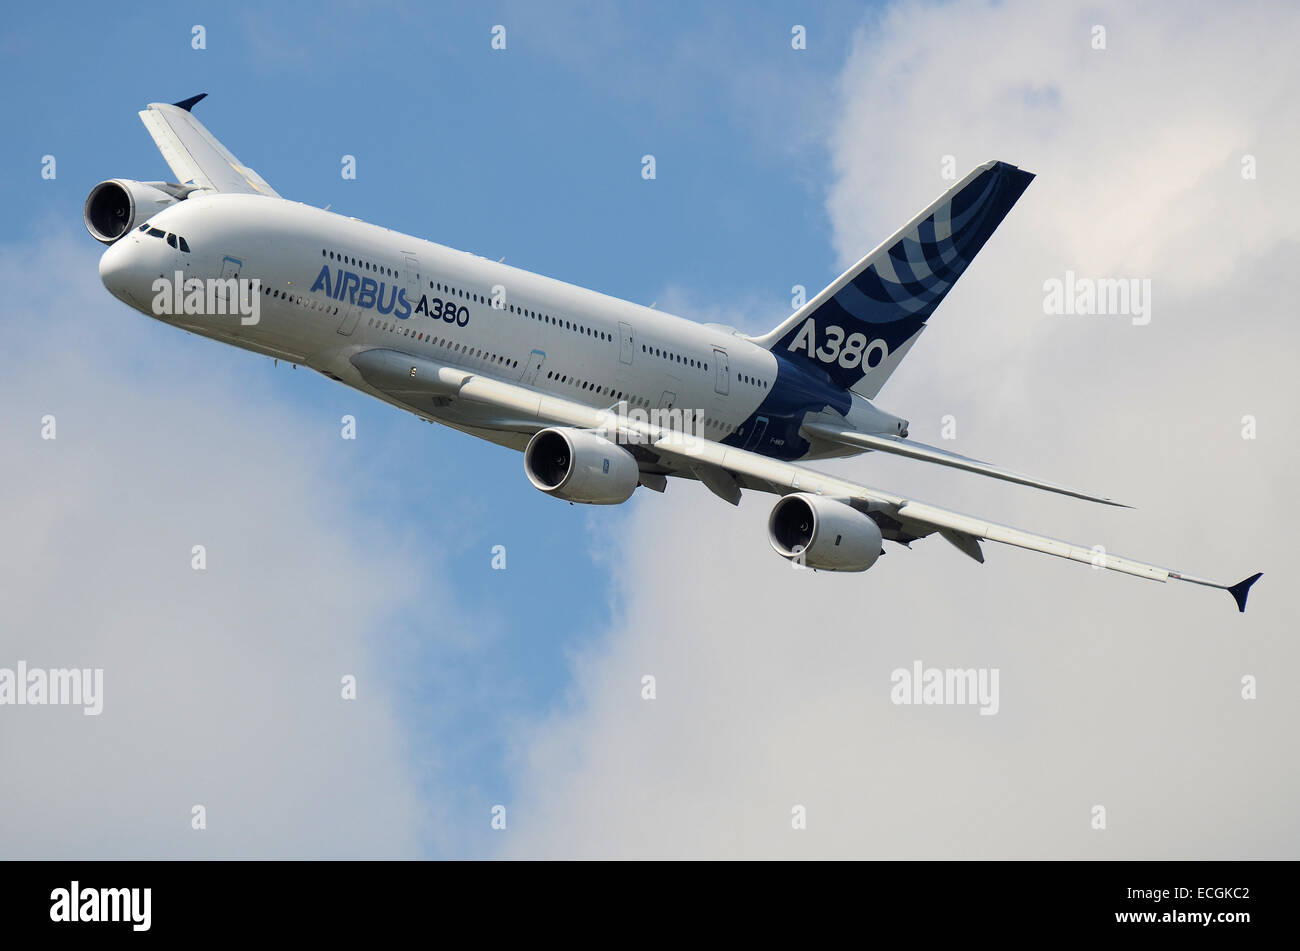 El A380 es un avión de doble cubierta, de cuerpo ancho y cuatro motores fabricado por Airbus. Es el avión civil más grande del mundo. Vuelo prototipo Foto de stock